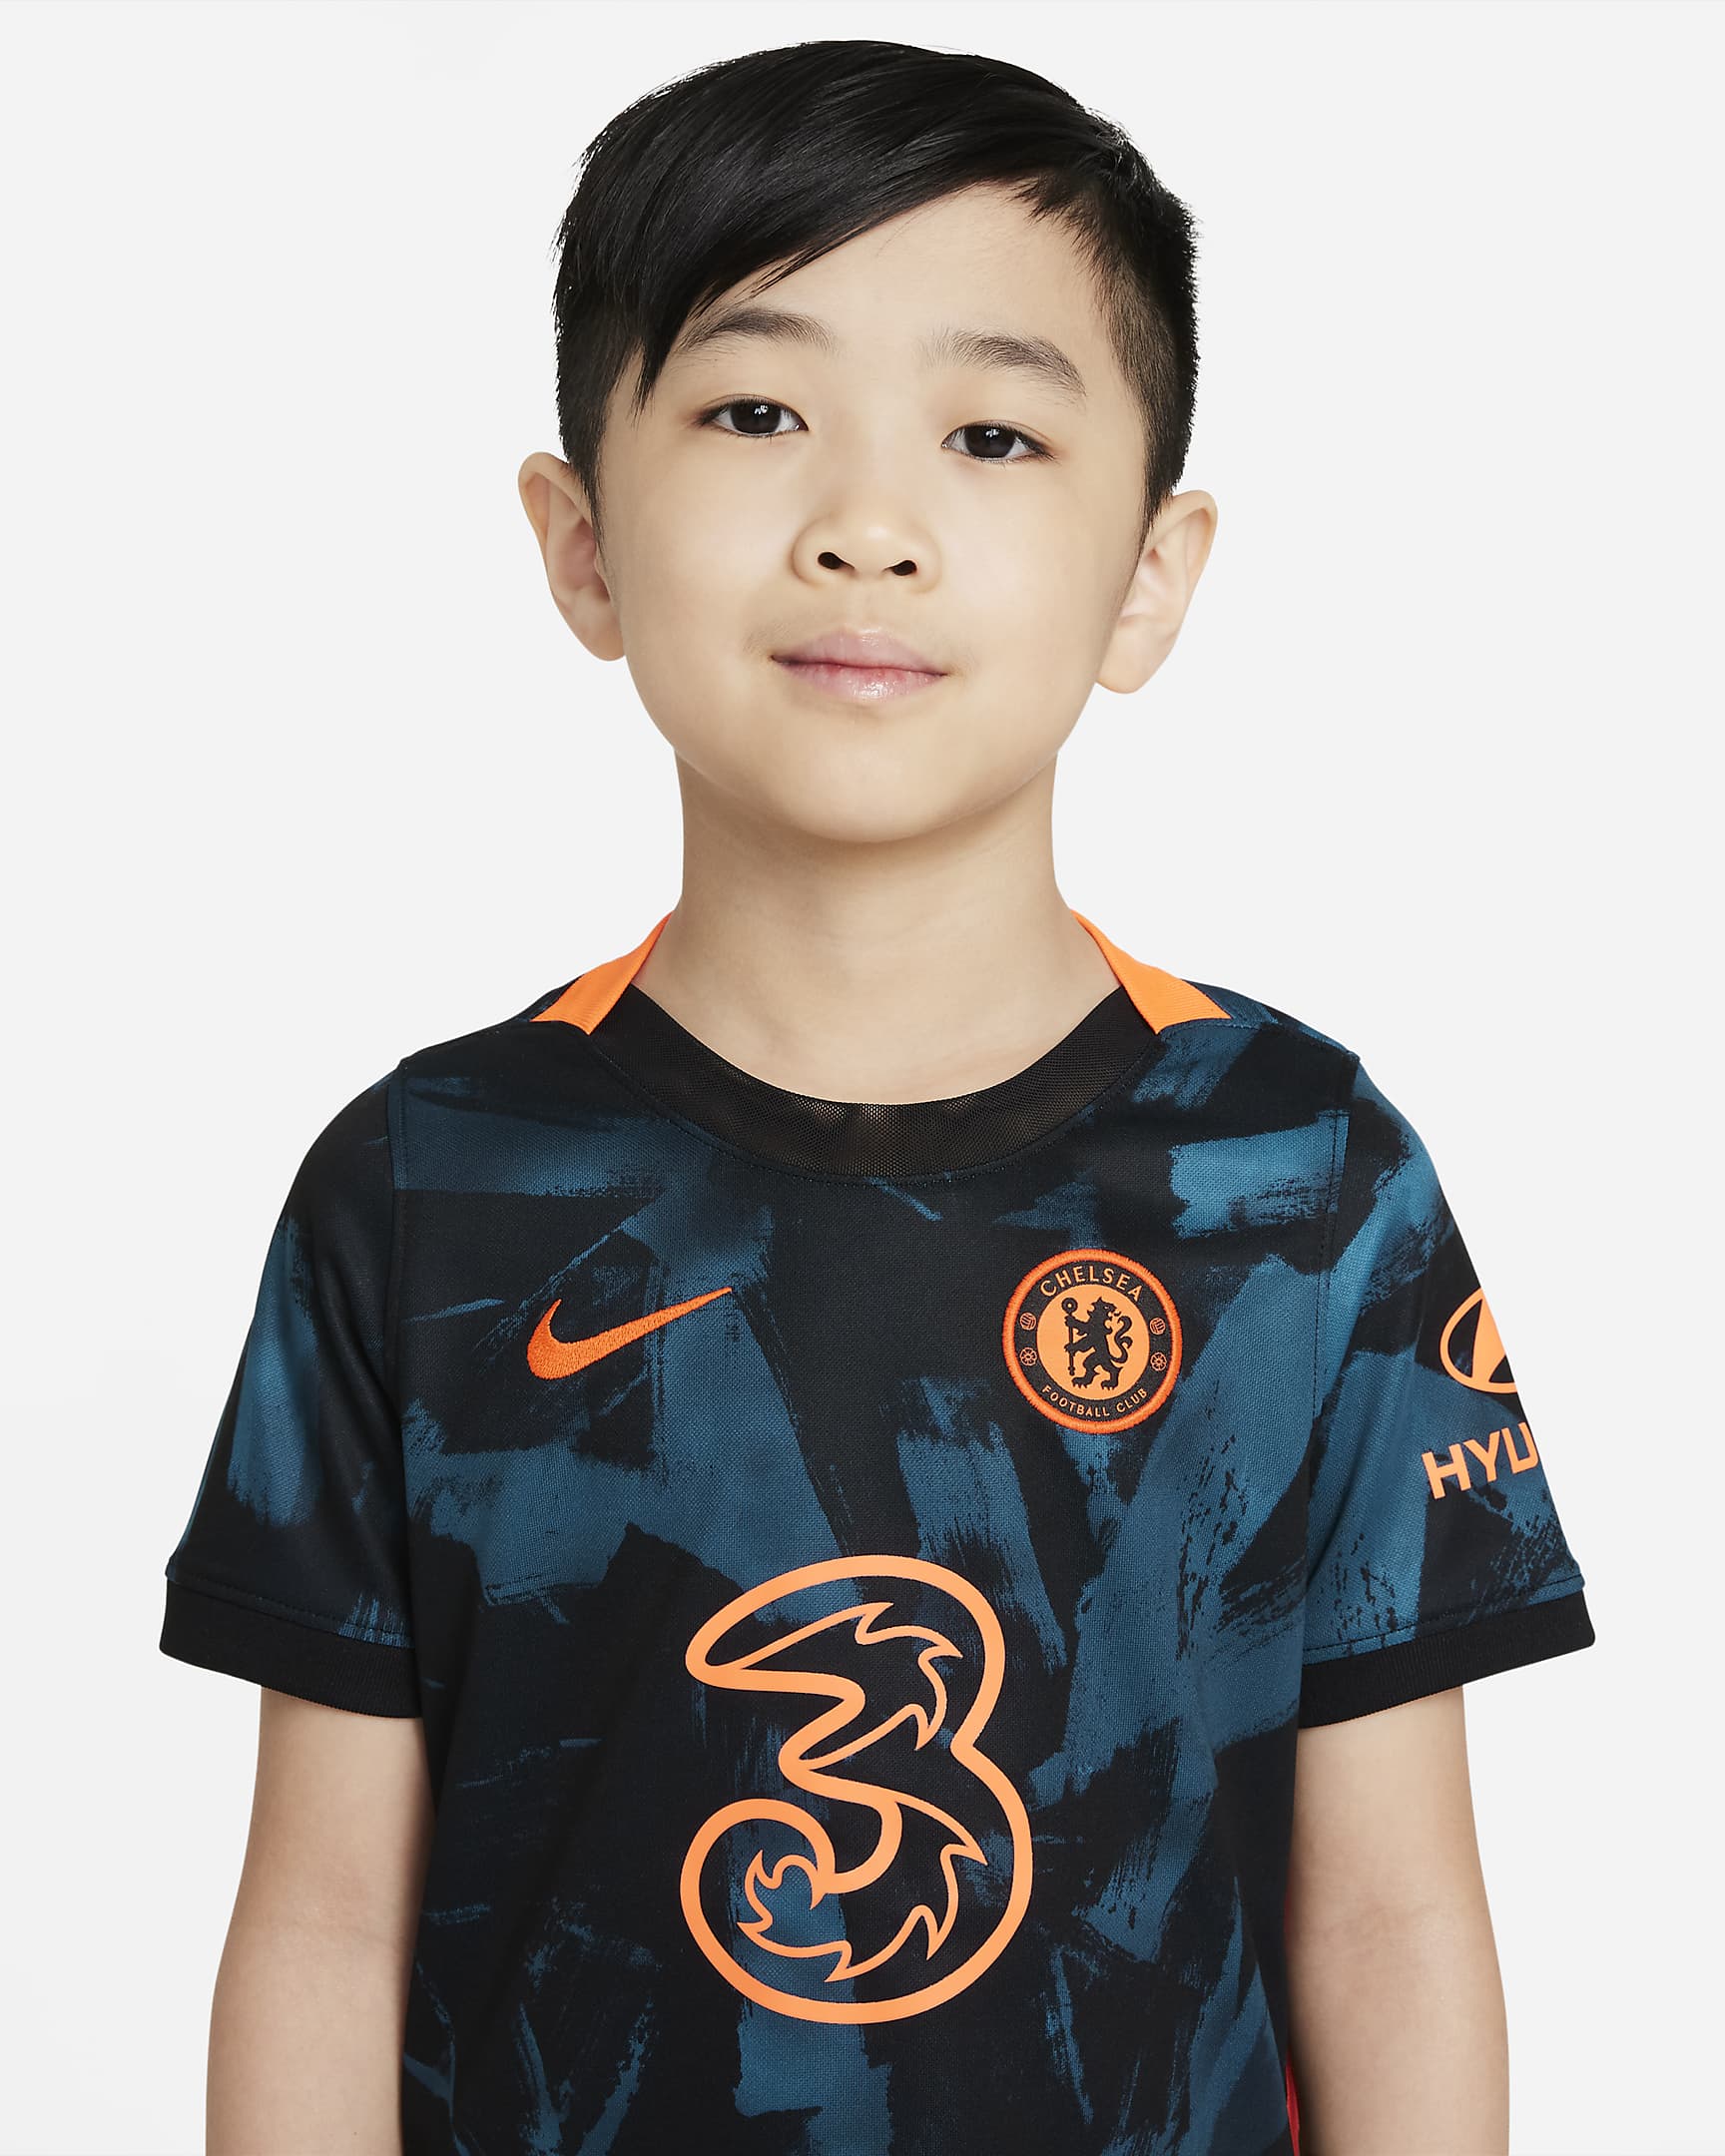 Chelsea FC 2021/22 Third Little Kids' Soccer Kit. Nike.com